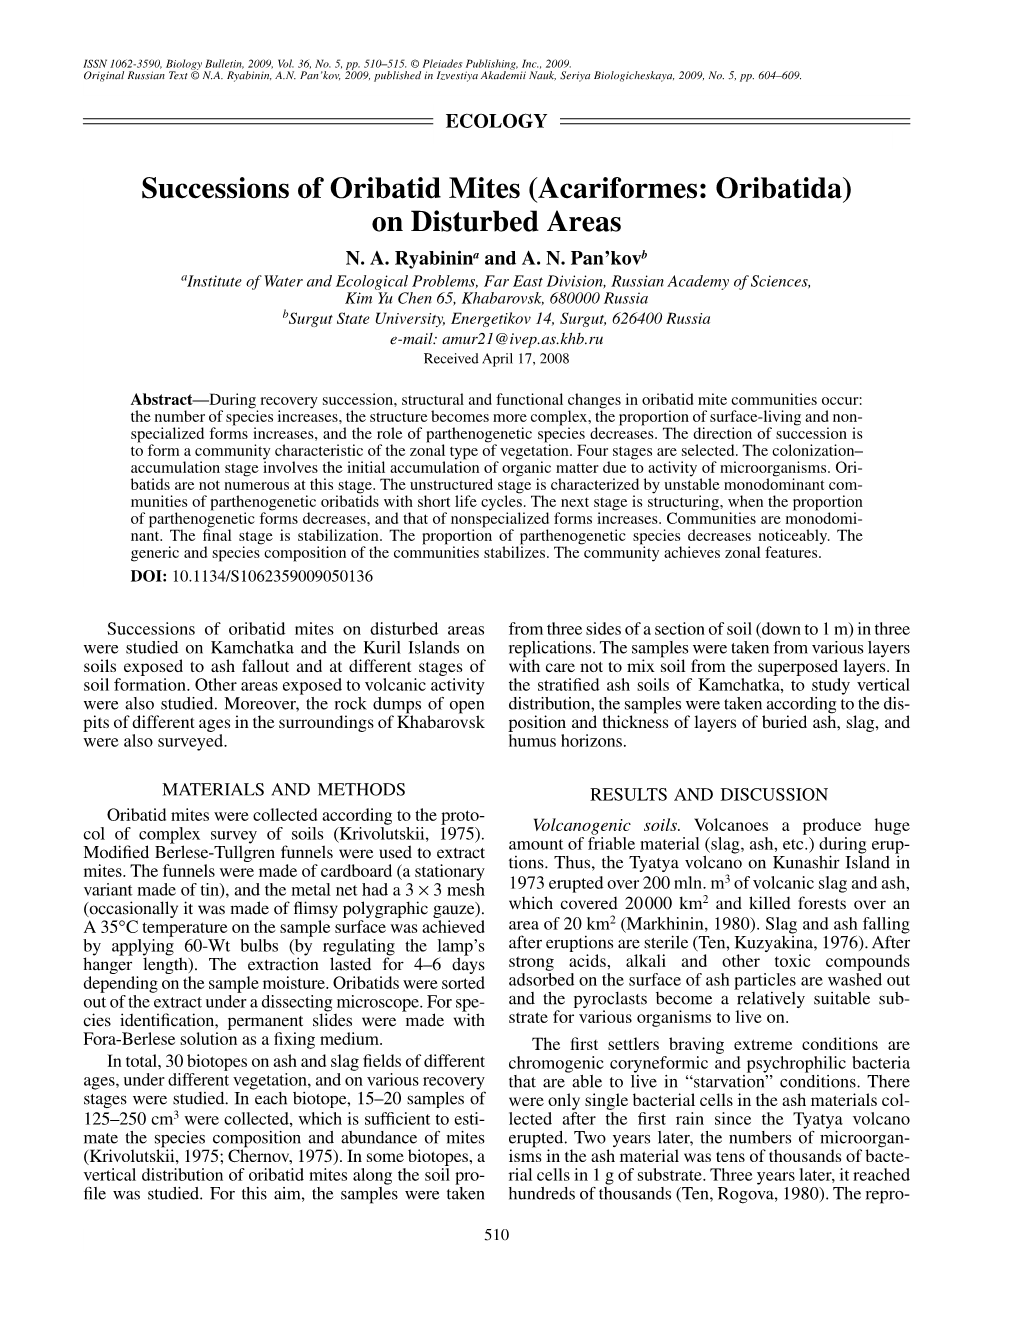 Successions of Oribatid Mites (Acariformes: Oribatida) on Disturbed Areas N